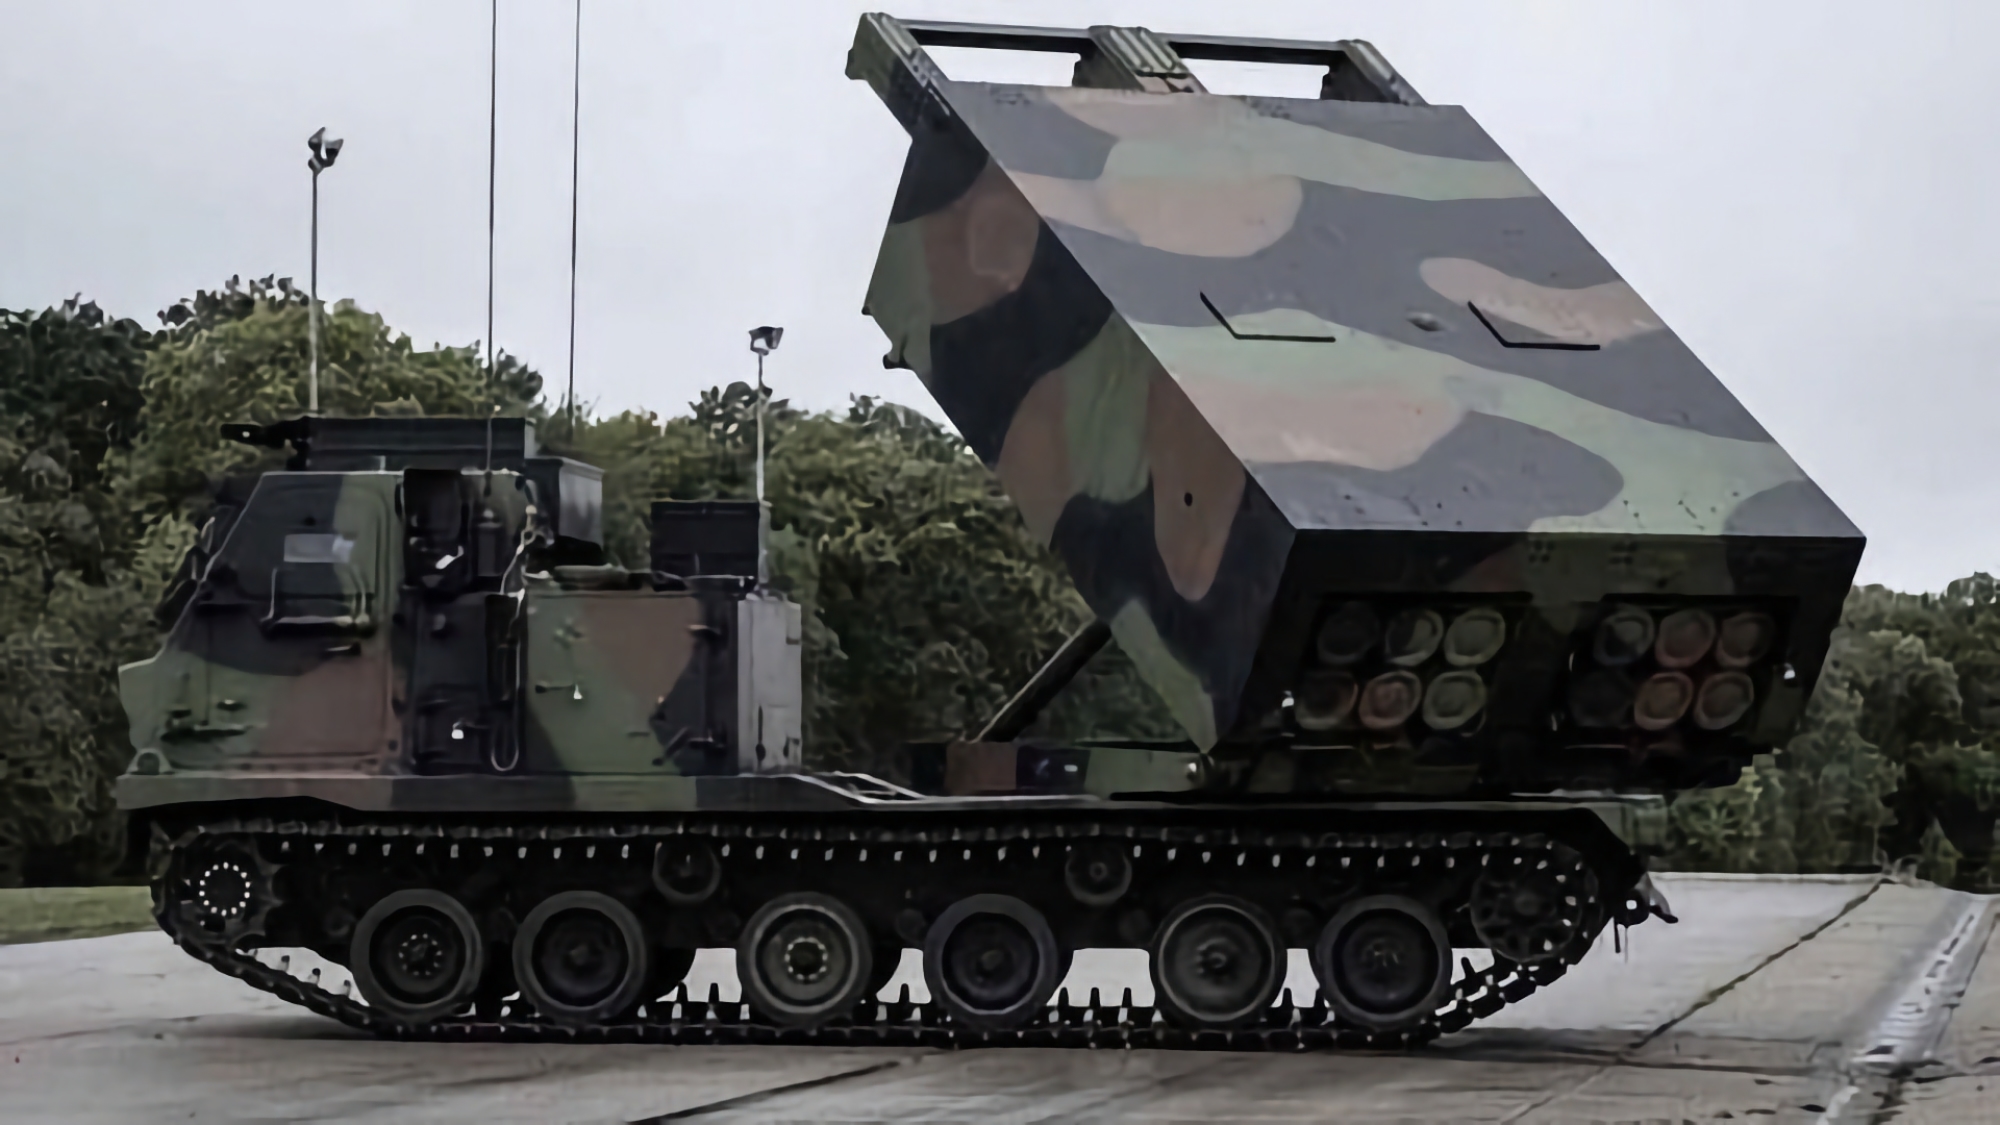 Frankreich hat ein weiteres Los LRU-Mehrfachraketenwerfer an die Ukraine geliefert, eine modifizierte Version des M270